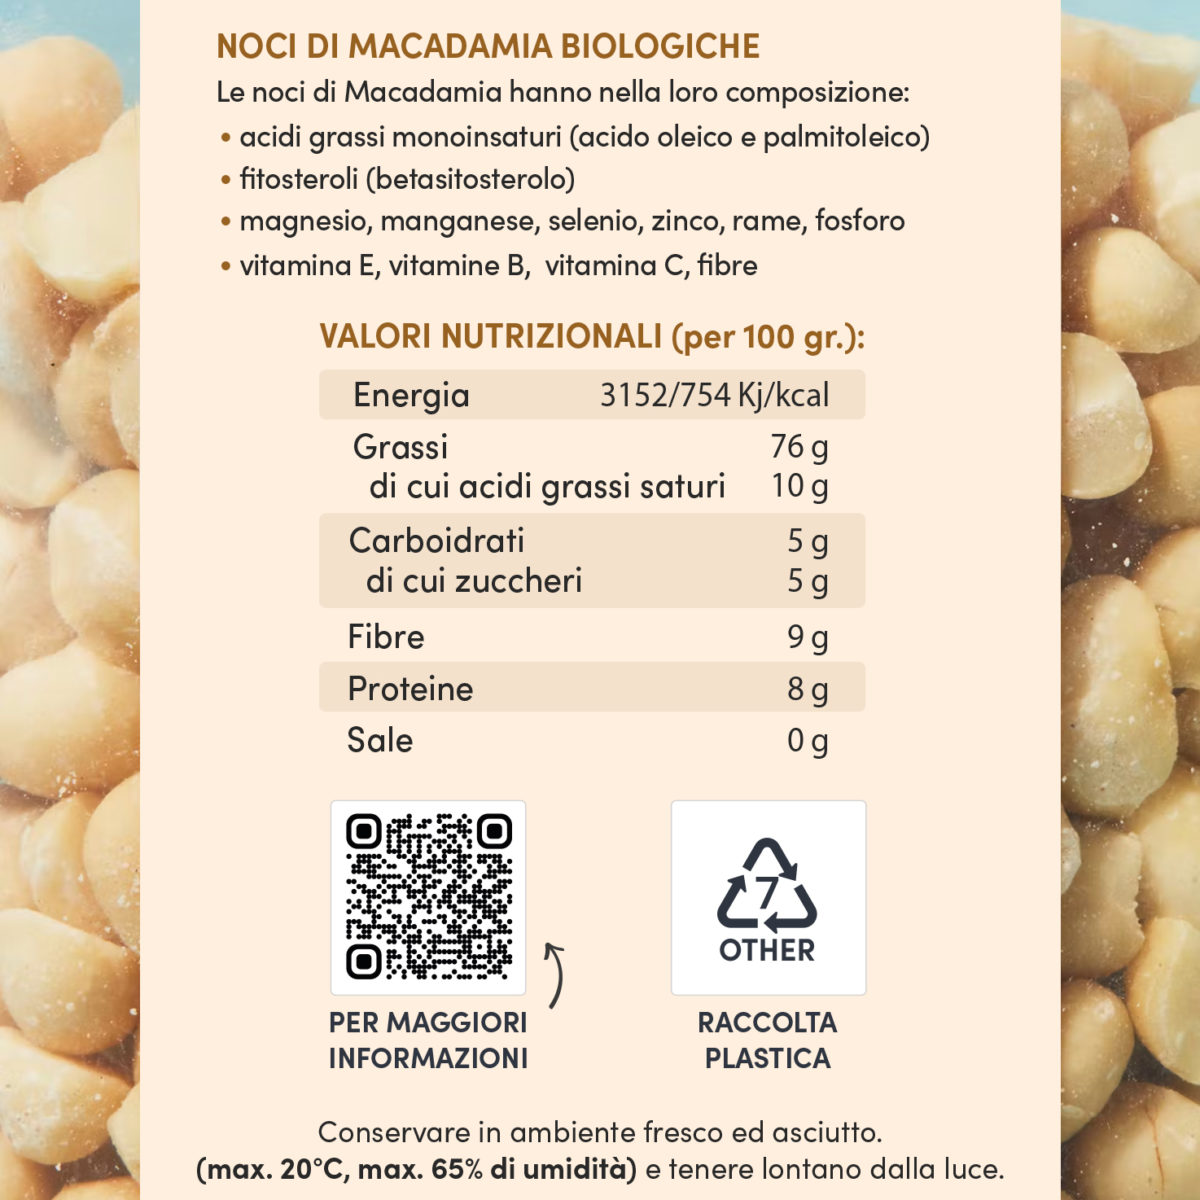 Etichetta Noci di Macadamia Biologiche